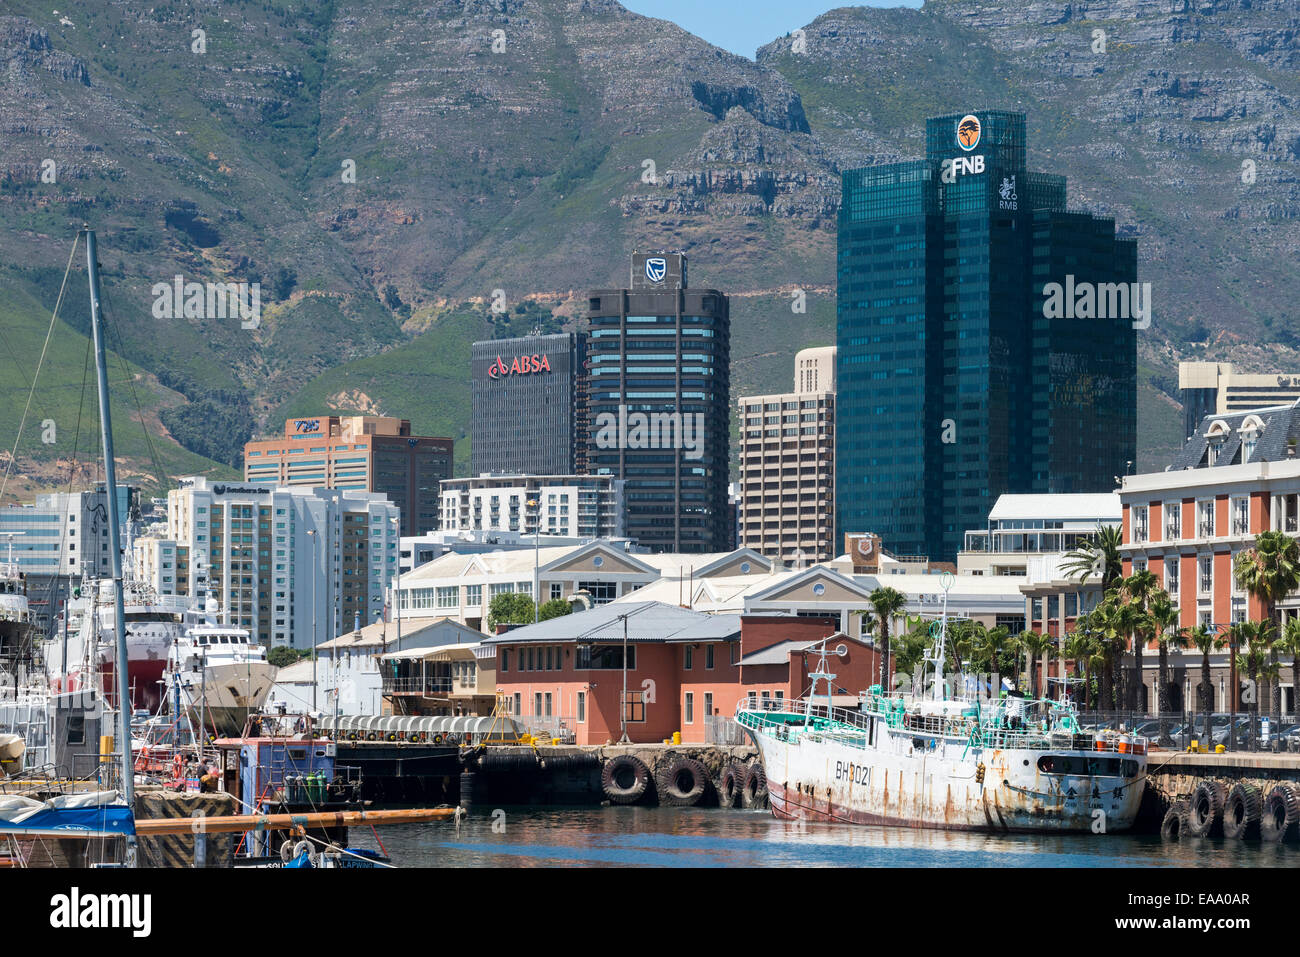 Gratte-ciel dans le quartier central des affaires et du vieux port, vue d'Albert Mall, Cape Town, Afrique du Sud Banque D'Images